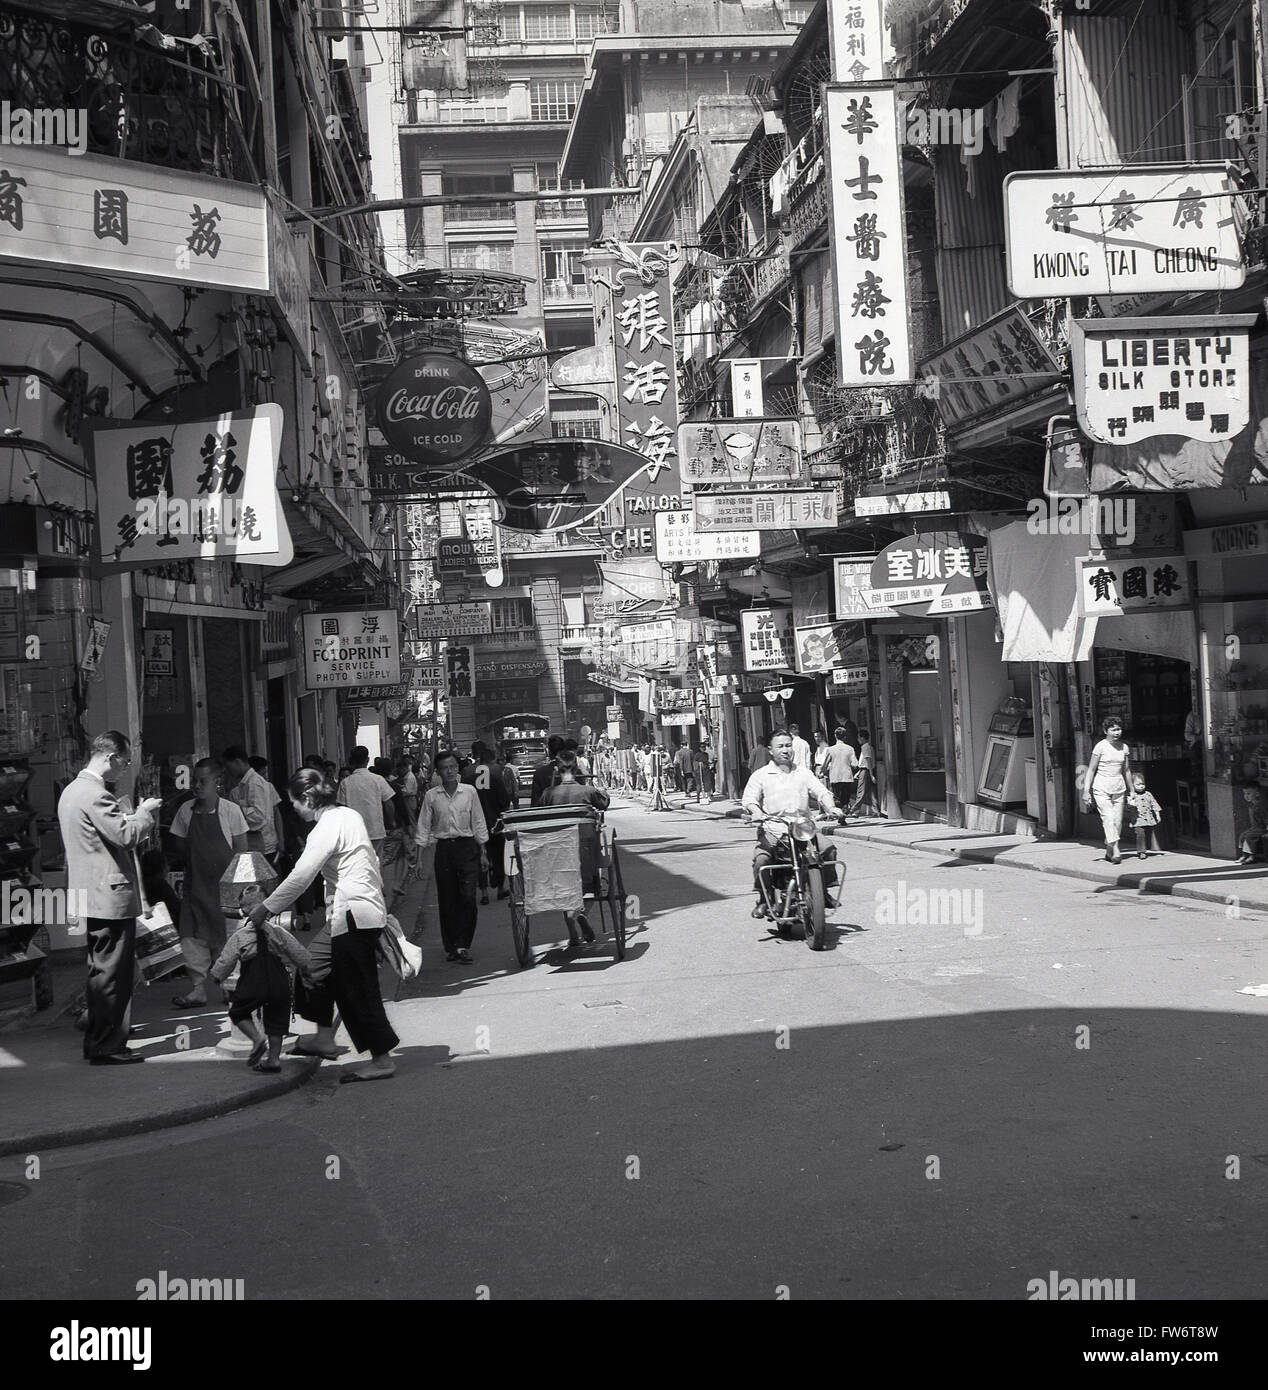 Anni '50, storico, angolo di strada, città vecchia, Hong Kong, Mostra gli edifici, cartellonistica in cinese, inglese e gente locale. Anche nel trasporto di immagini dell'epoca, un risciò e un uomo locale su una moto. Foto Stock